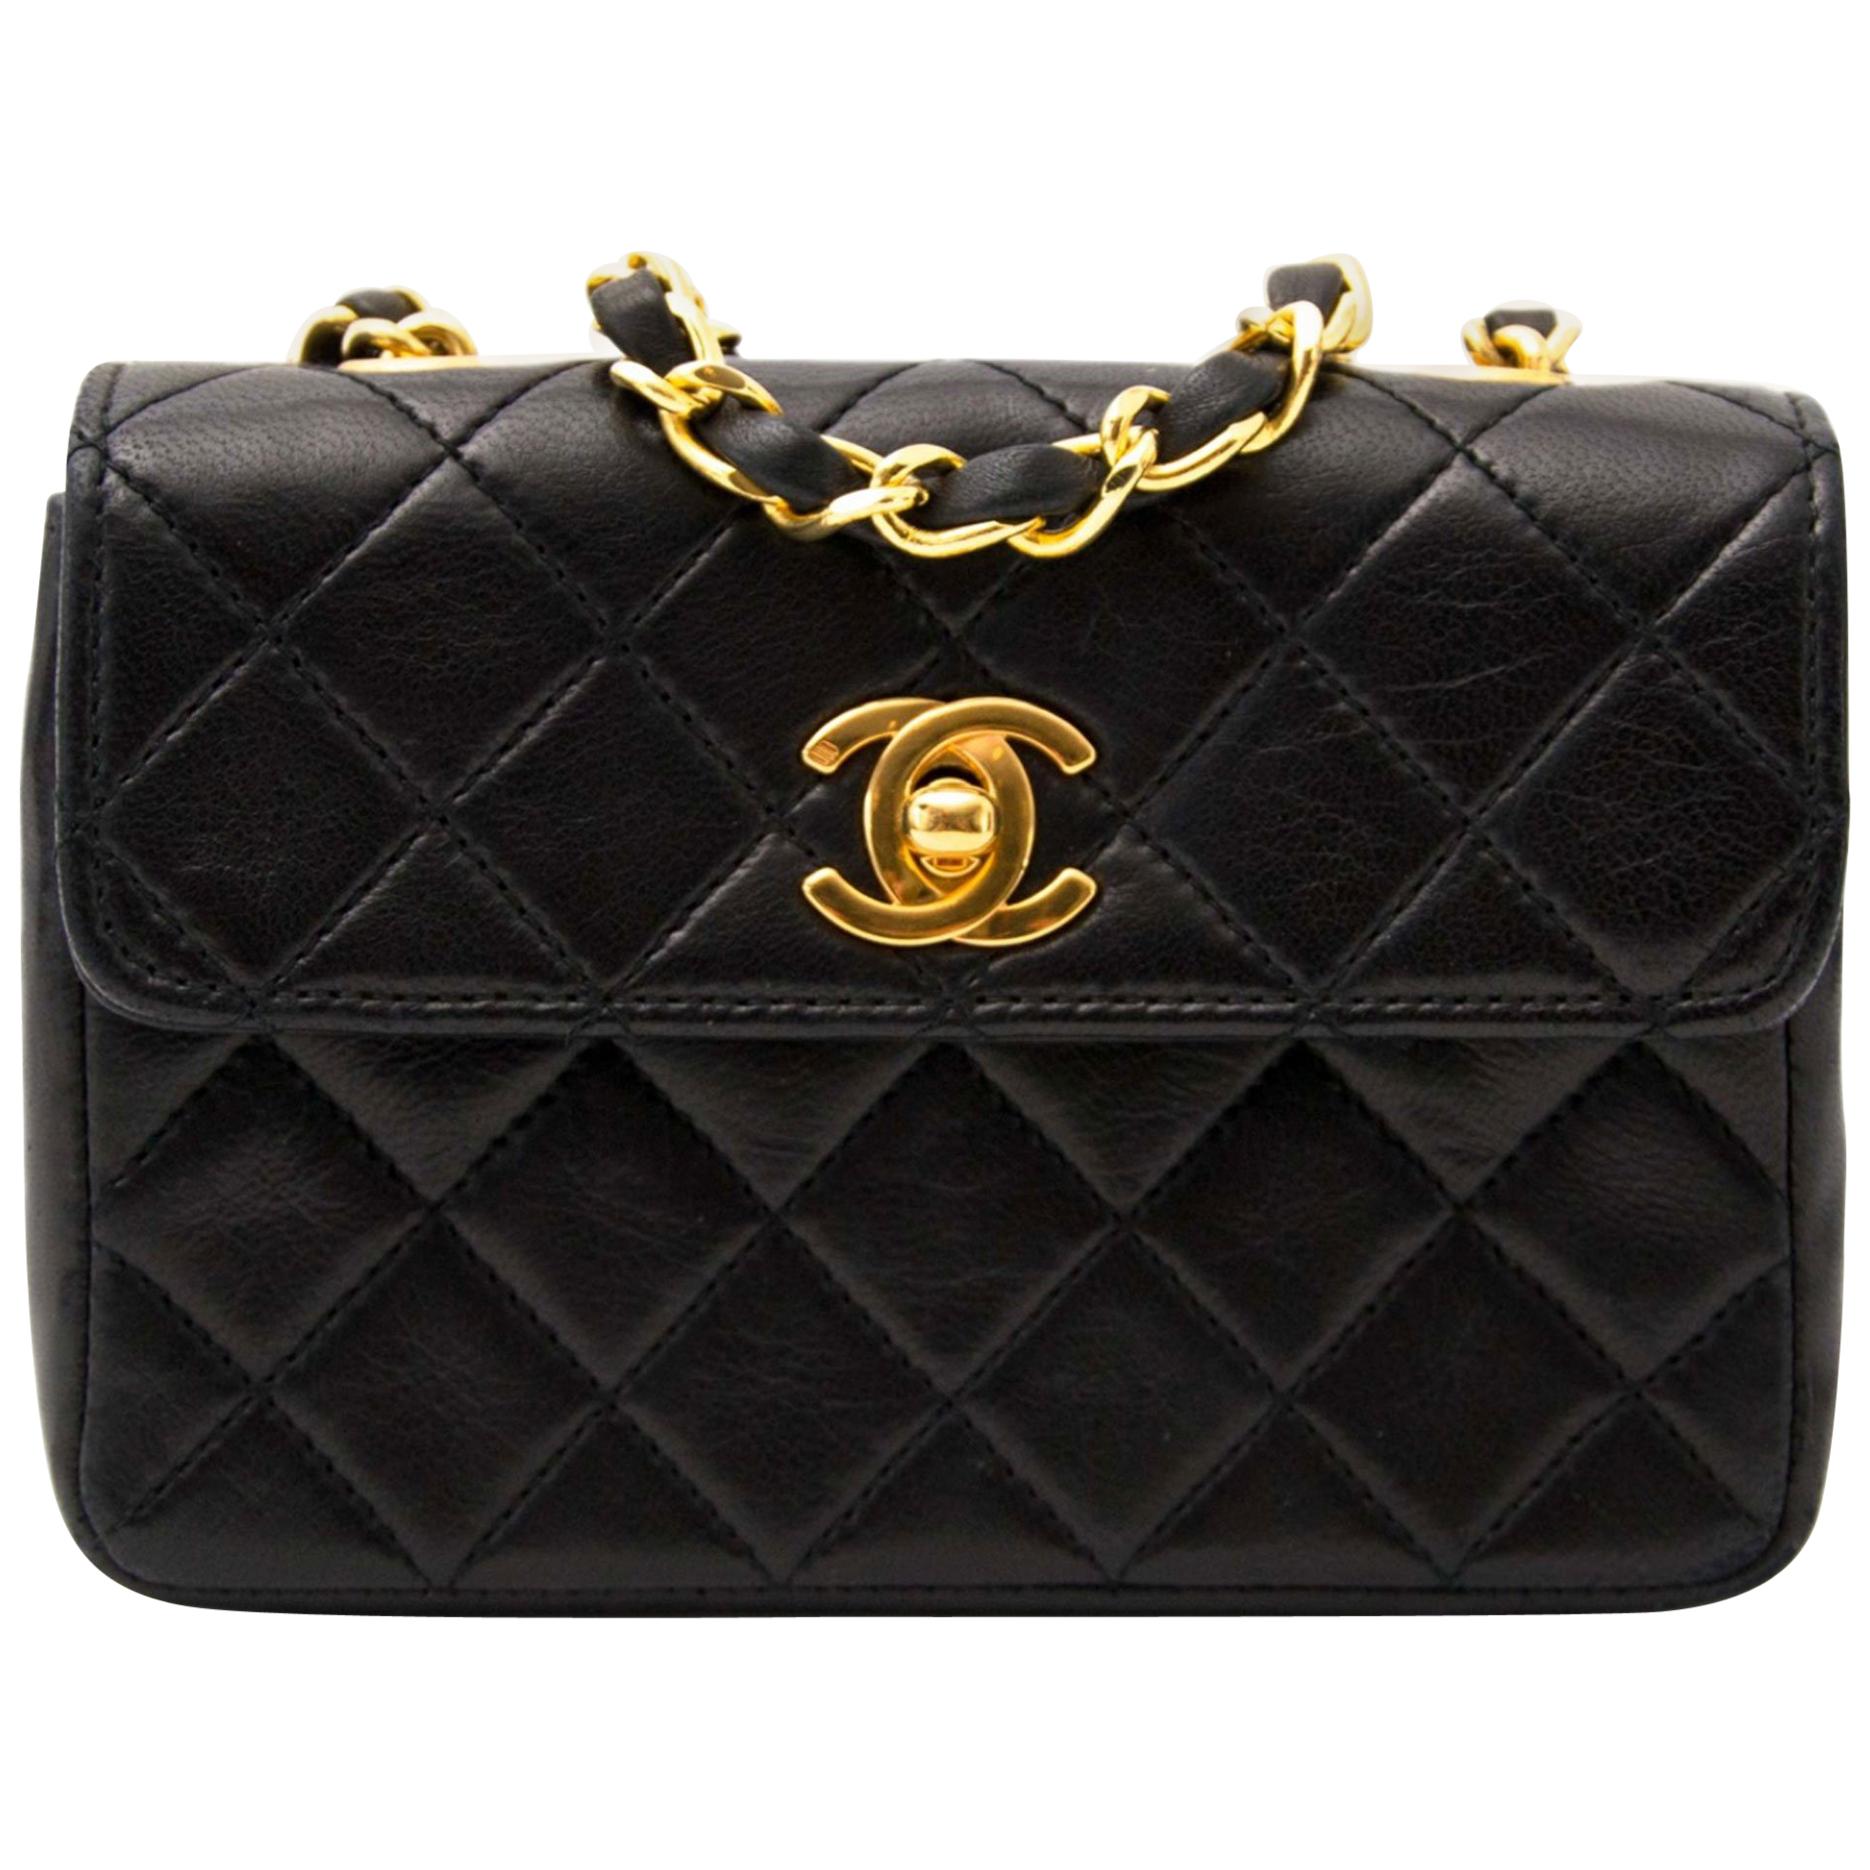 chanel small black crossbody handbag